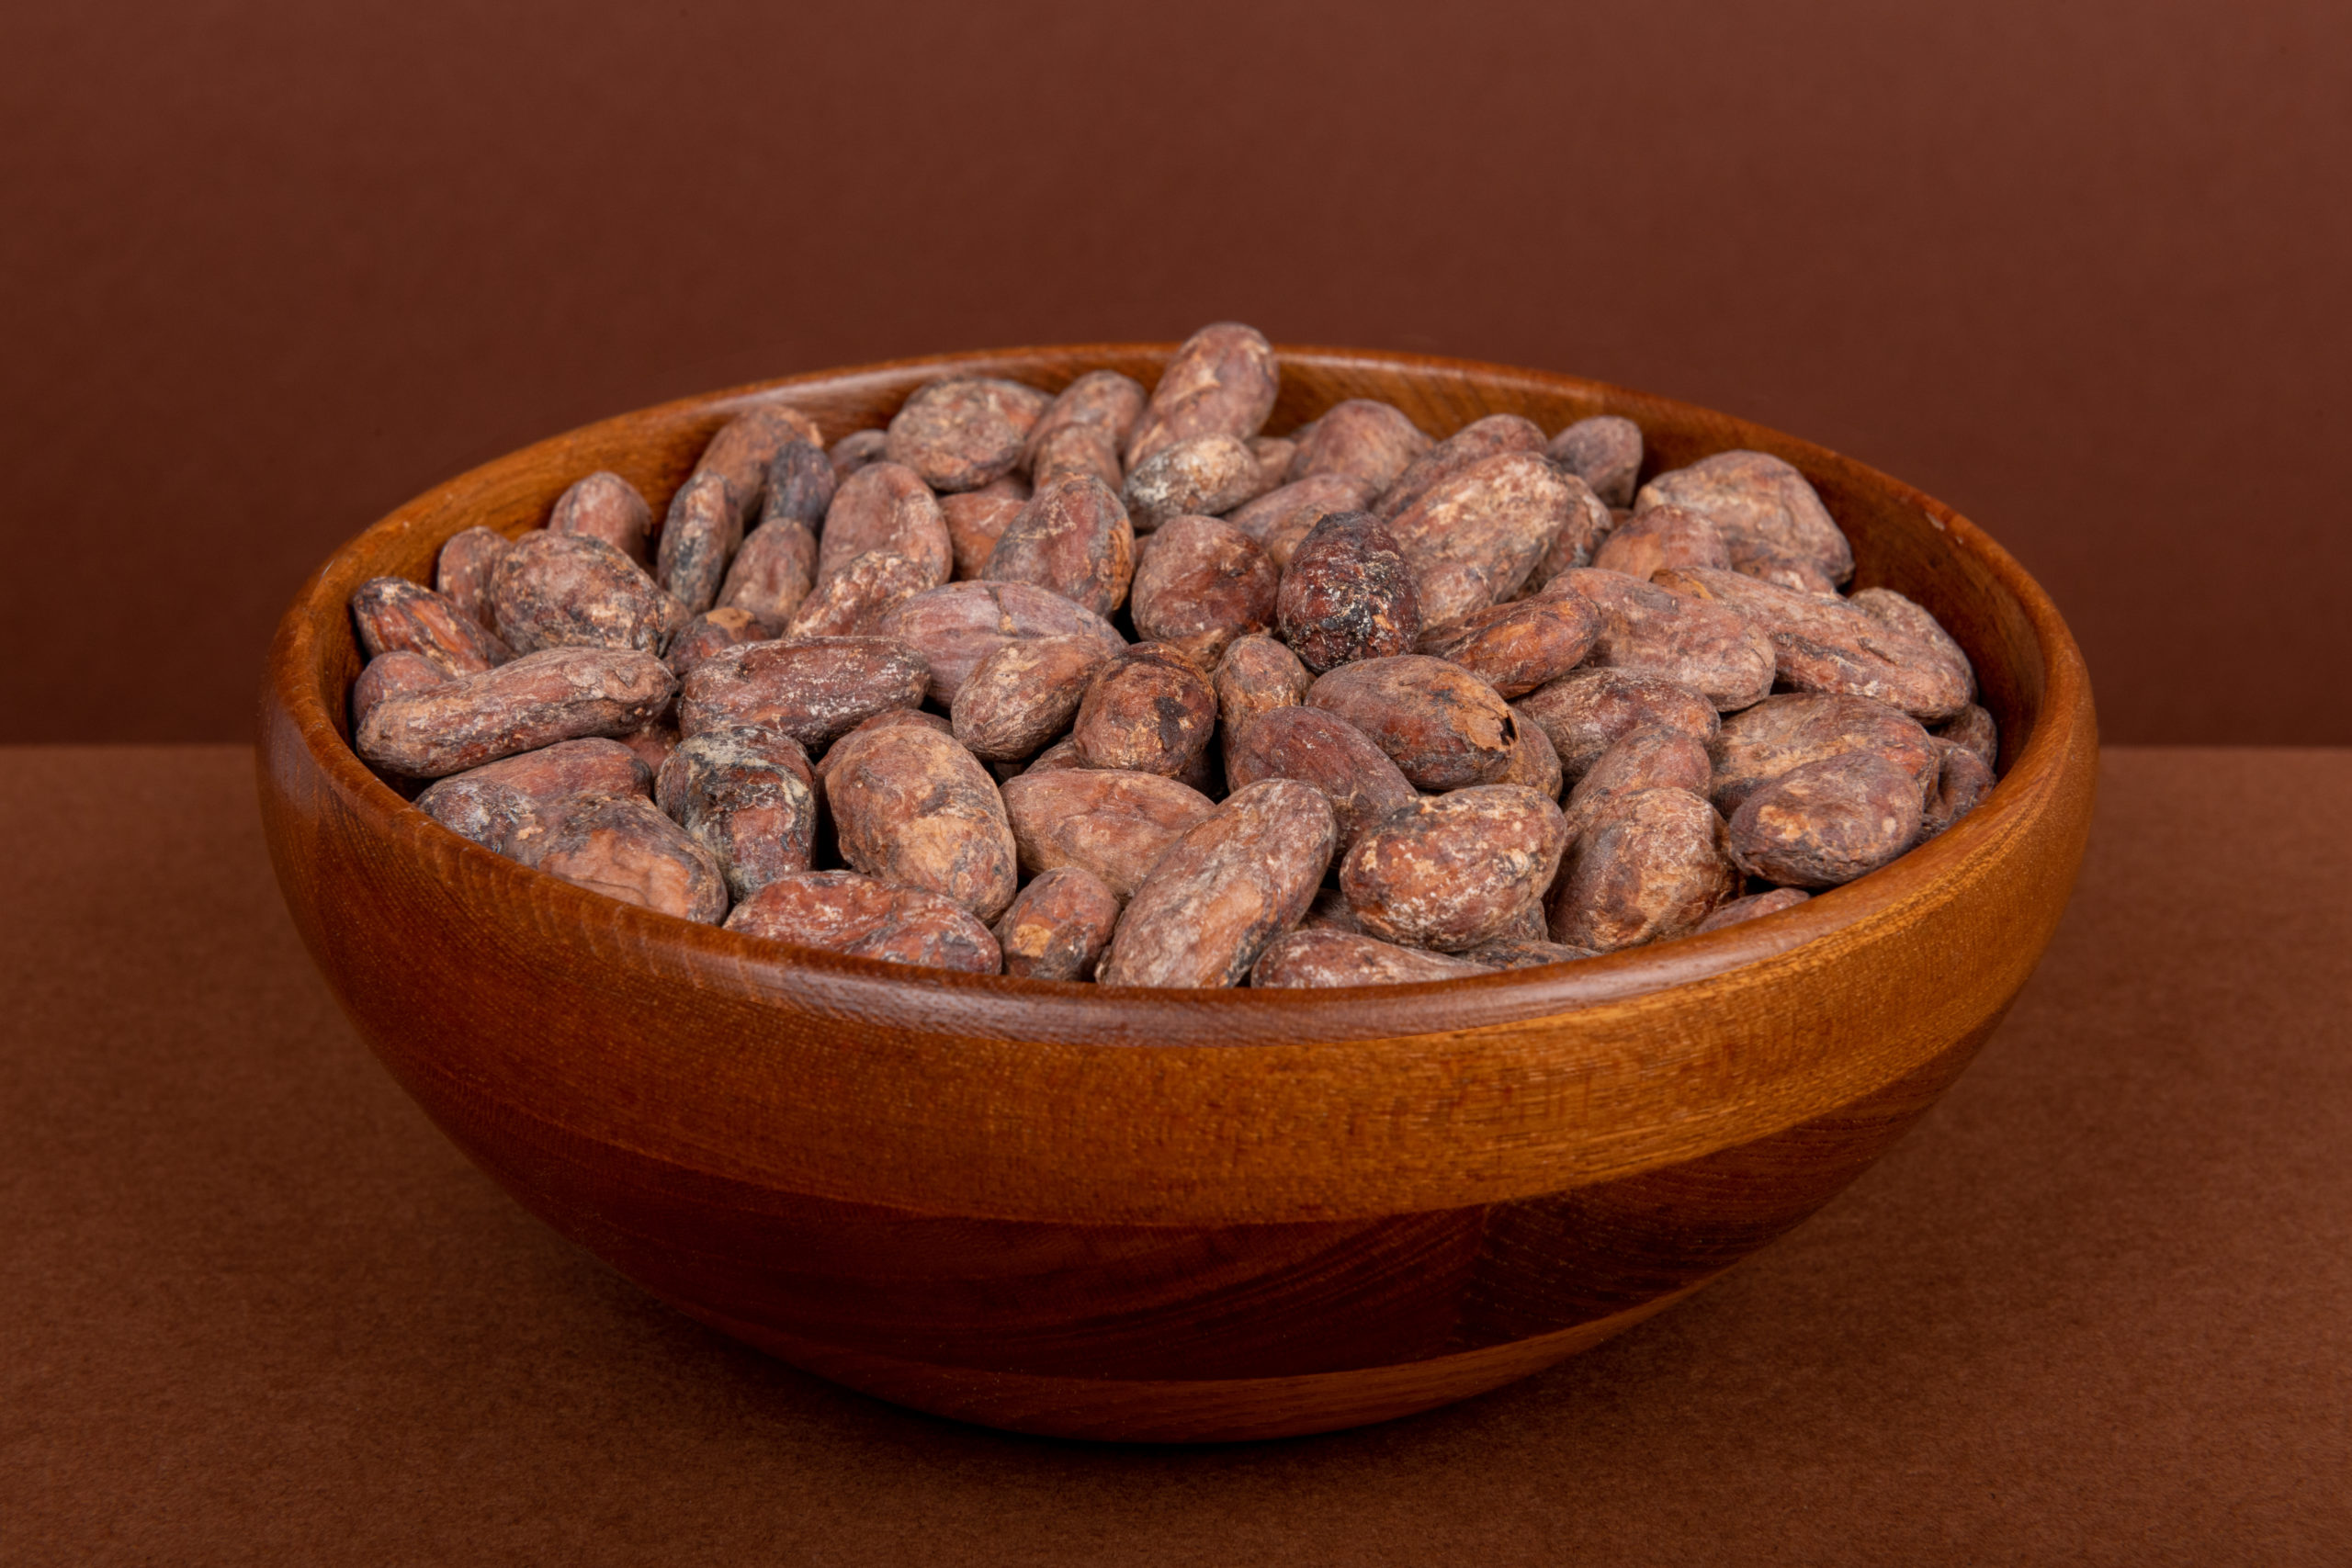 Des fèves de cacao sont rassemblées dans un bol en bois.